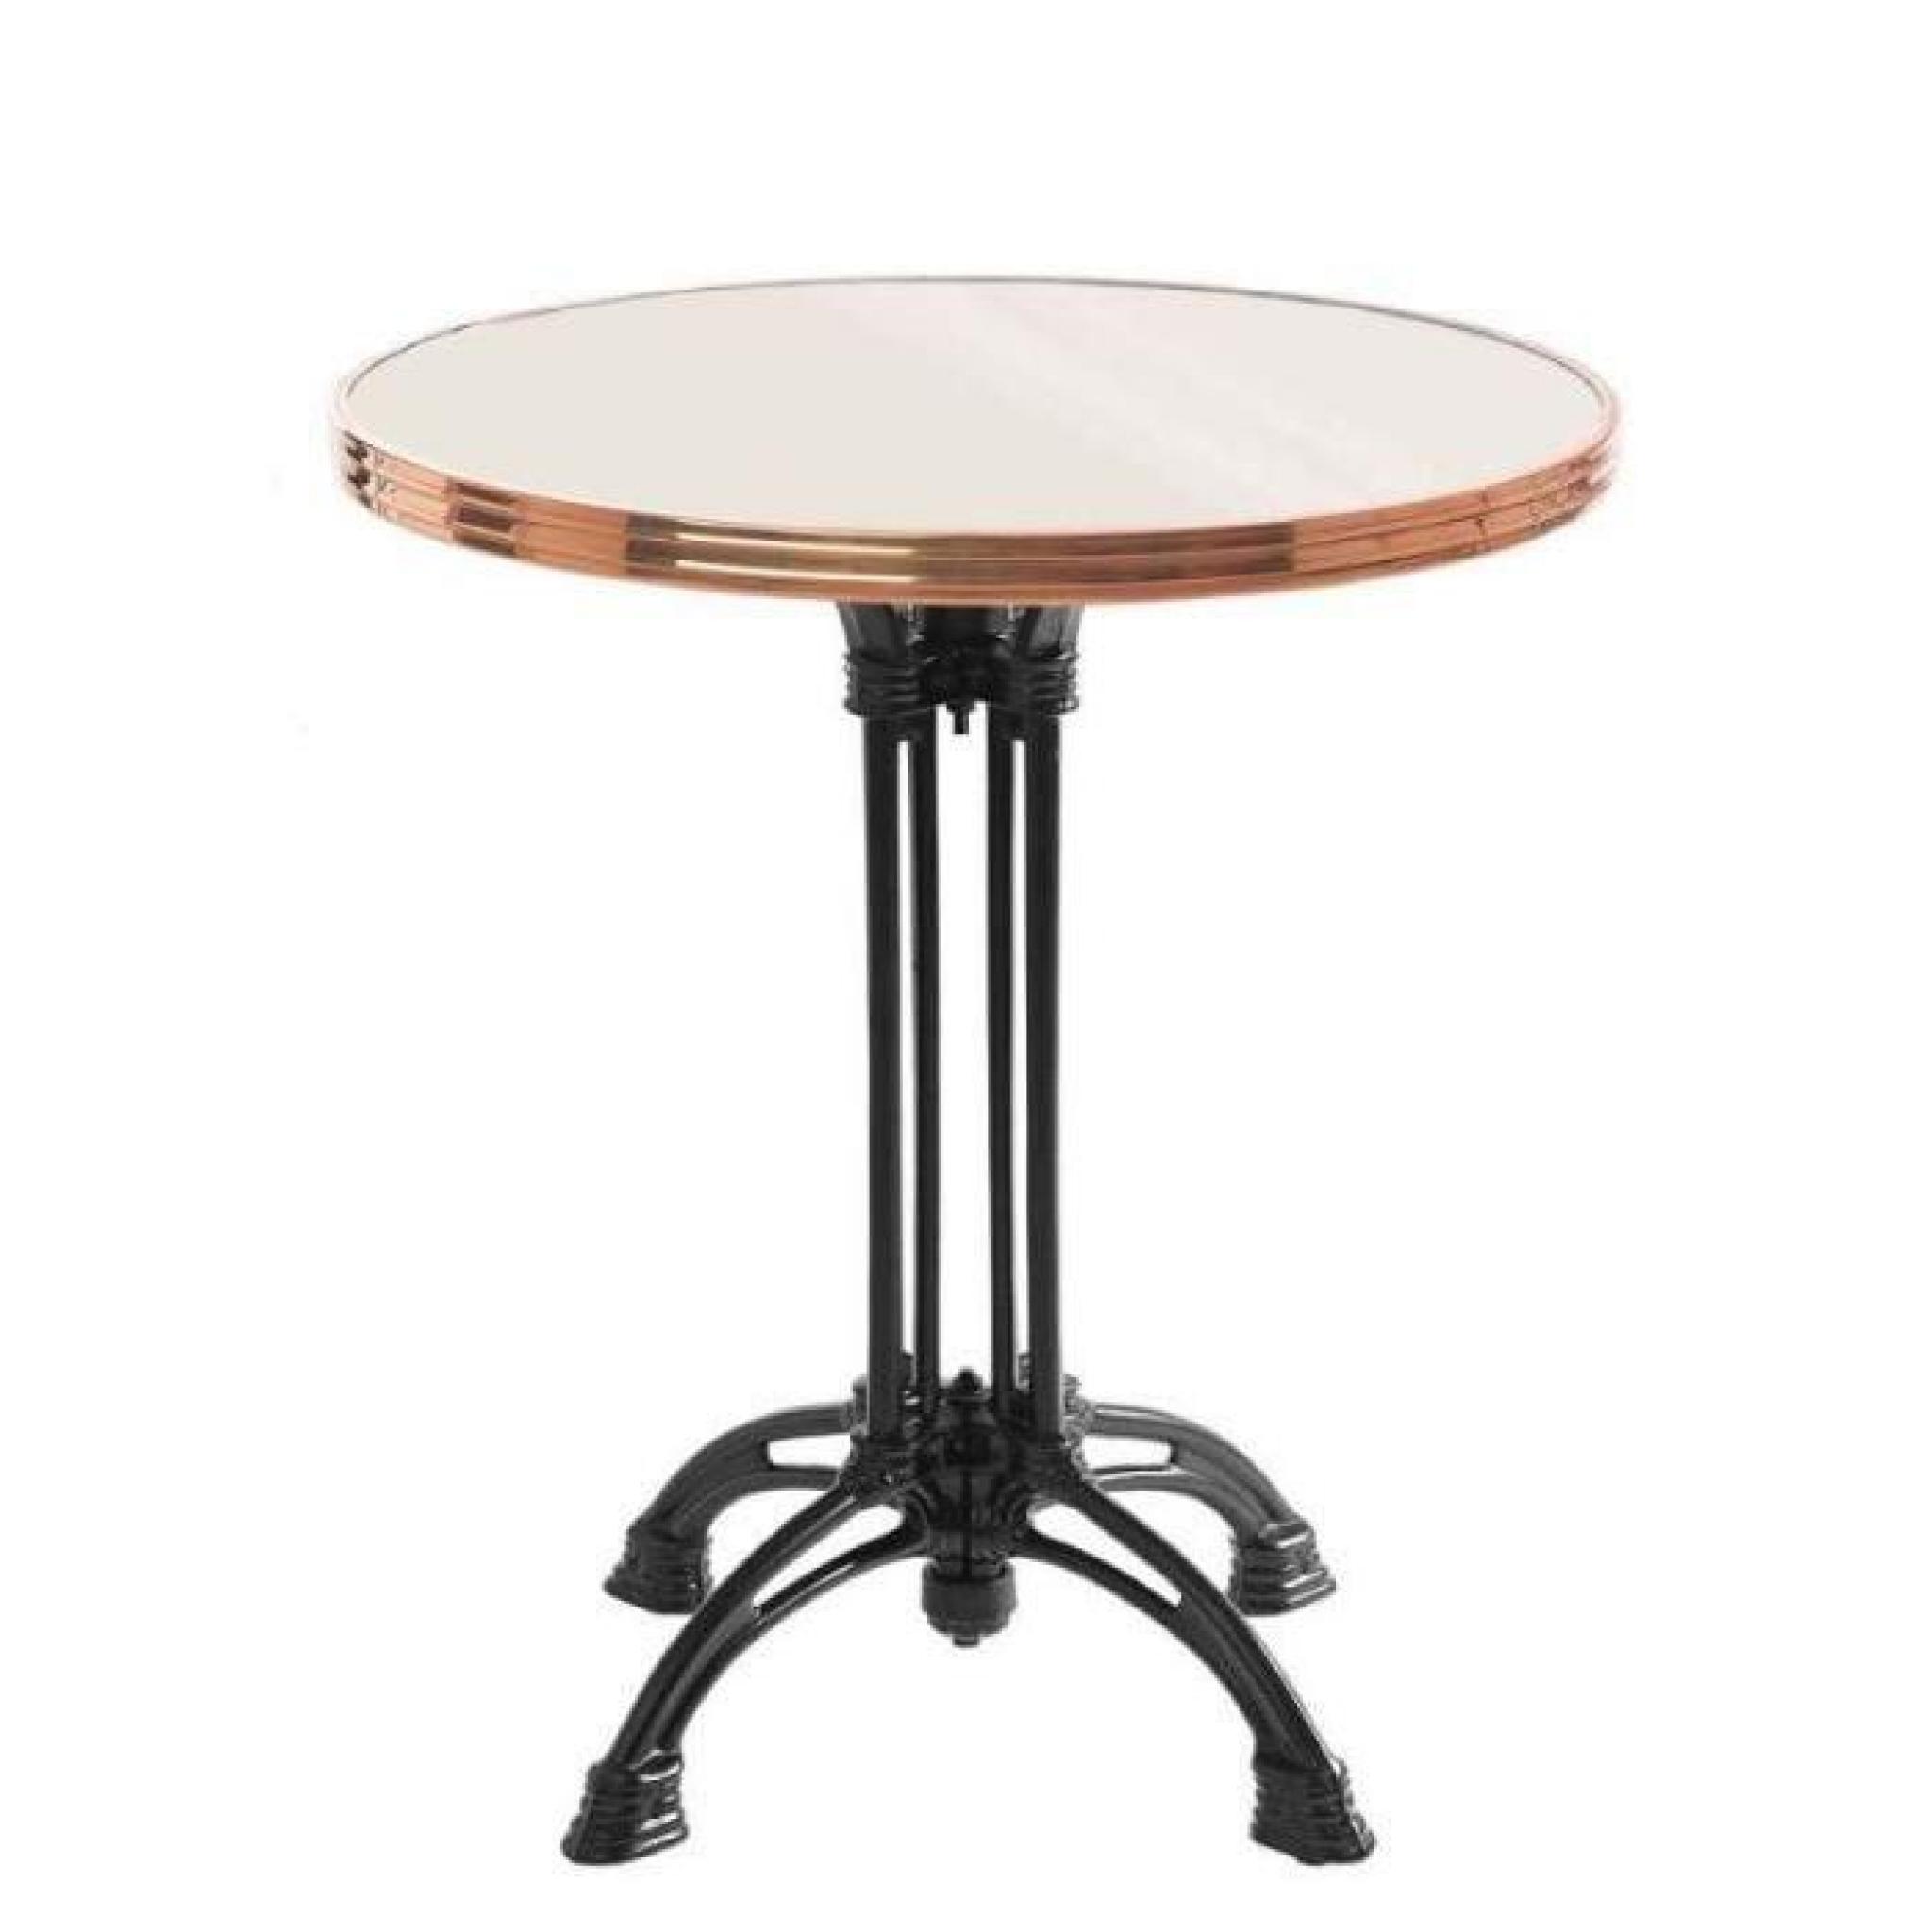 table bistrot ronde couleur ivoire avec cerclage en cuivre - pied eiffel 3 branches - h70 x d60 cm